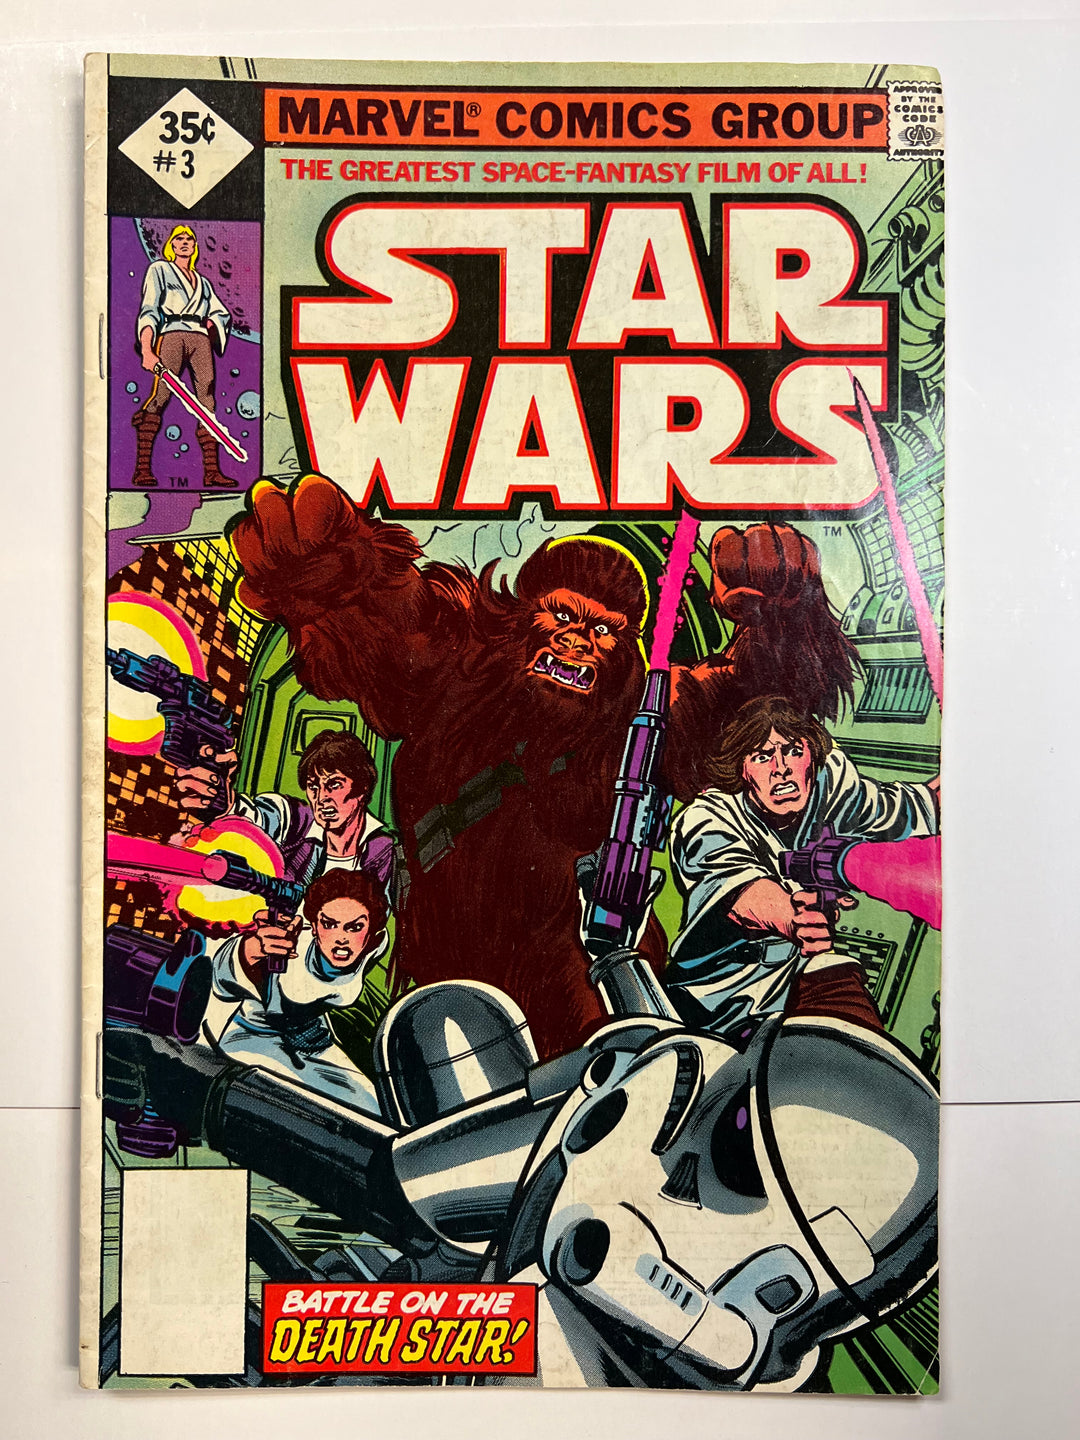 Star Wars #3 Whitman 35¢ Reprint Marvel 1977 VG